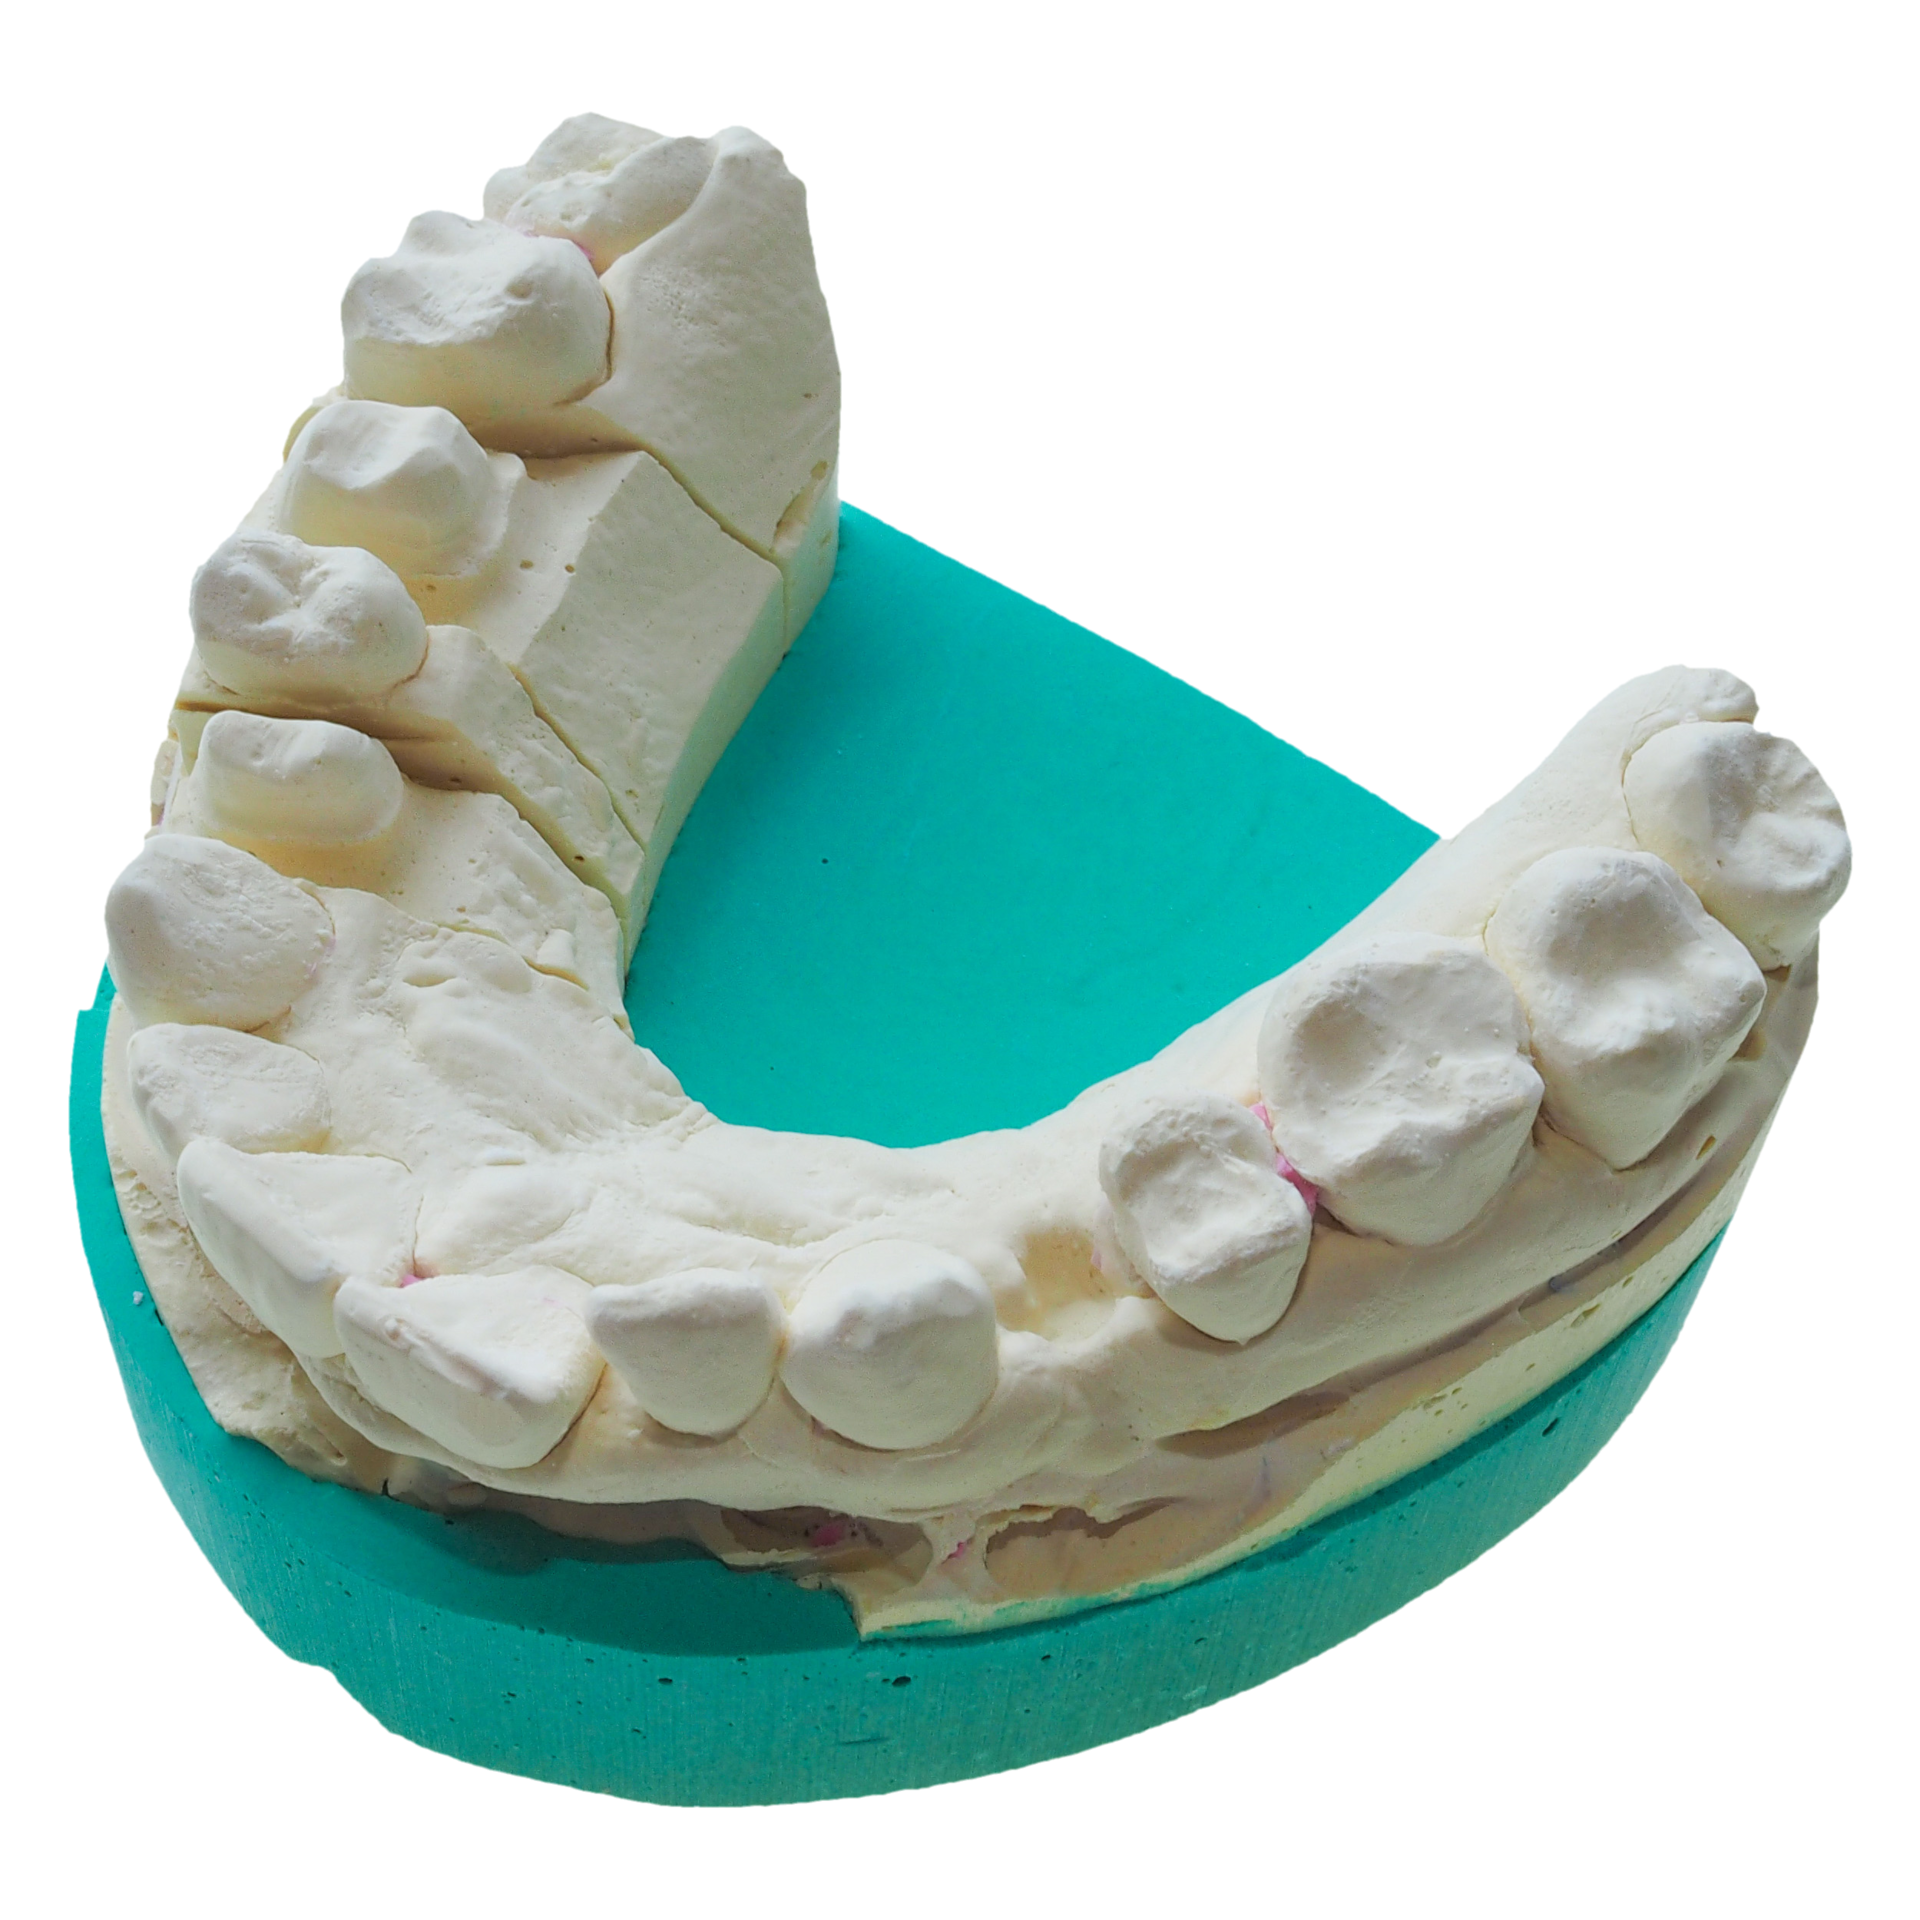 Dental Mold PNG Images & PSDs for Download